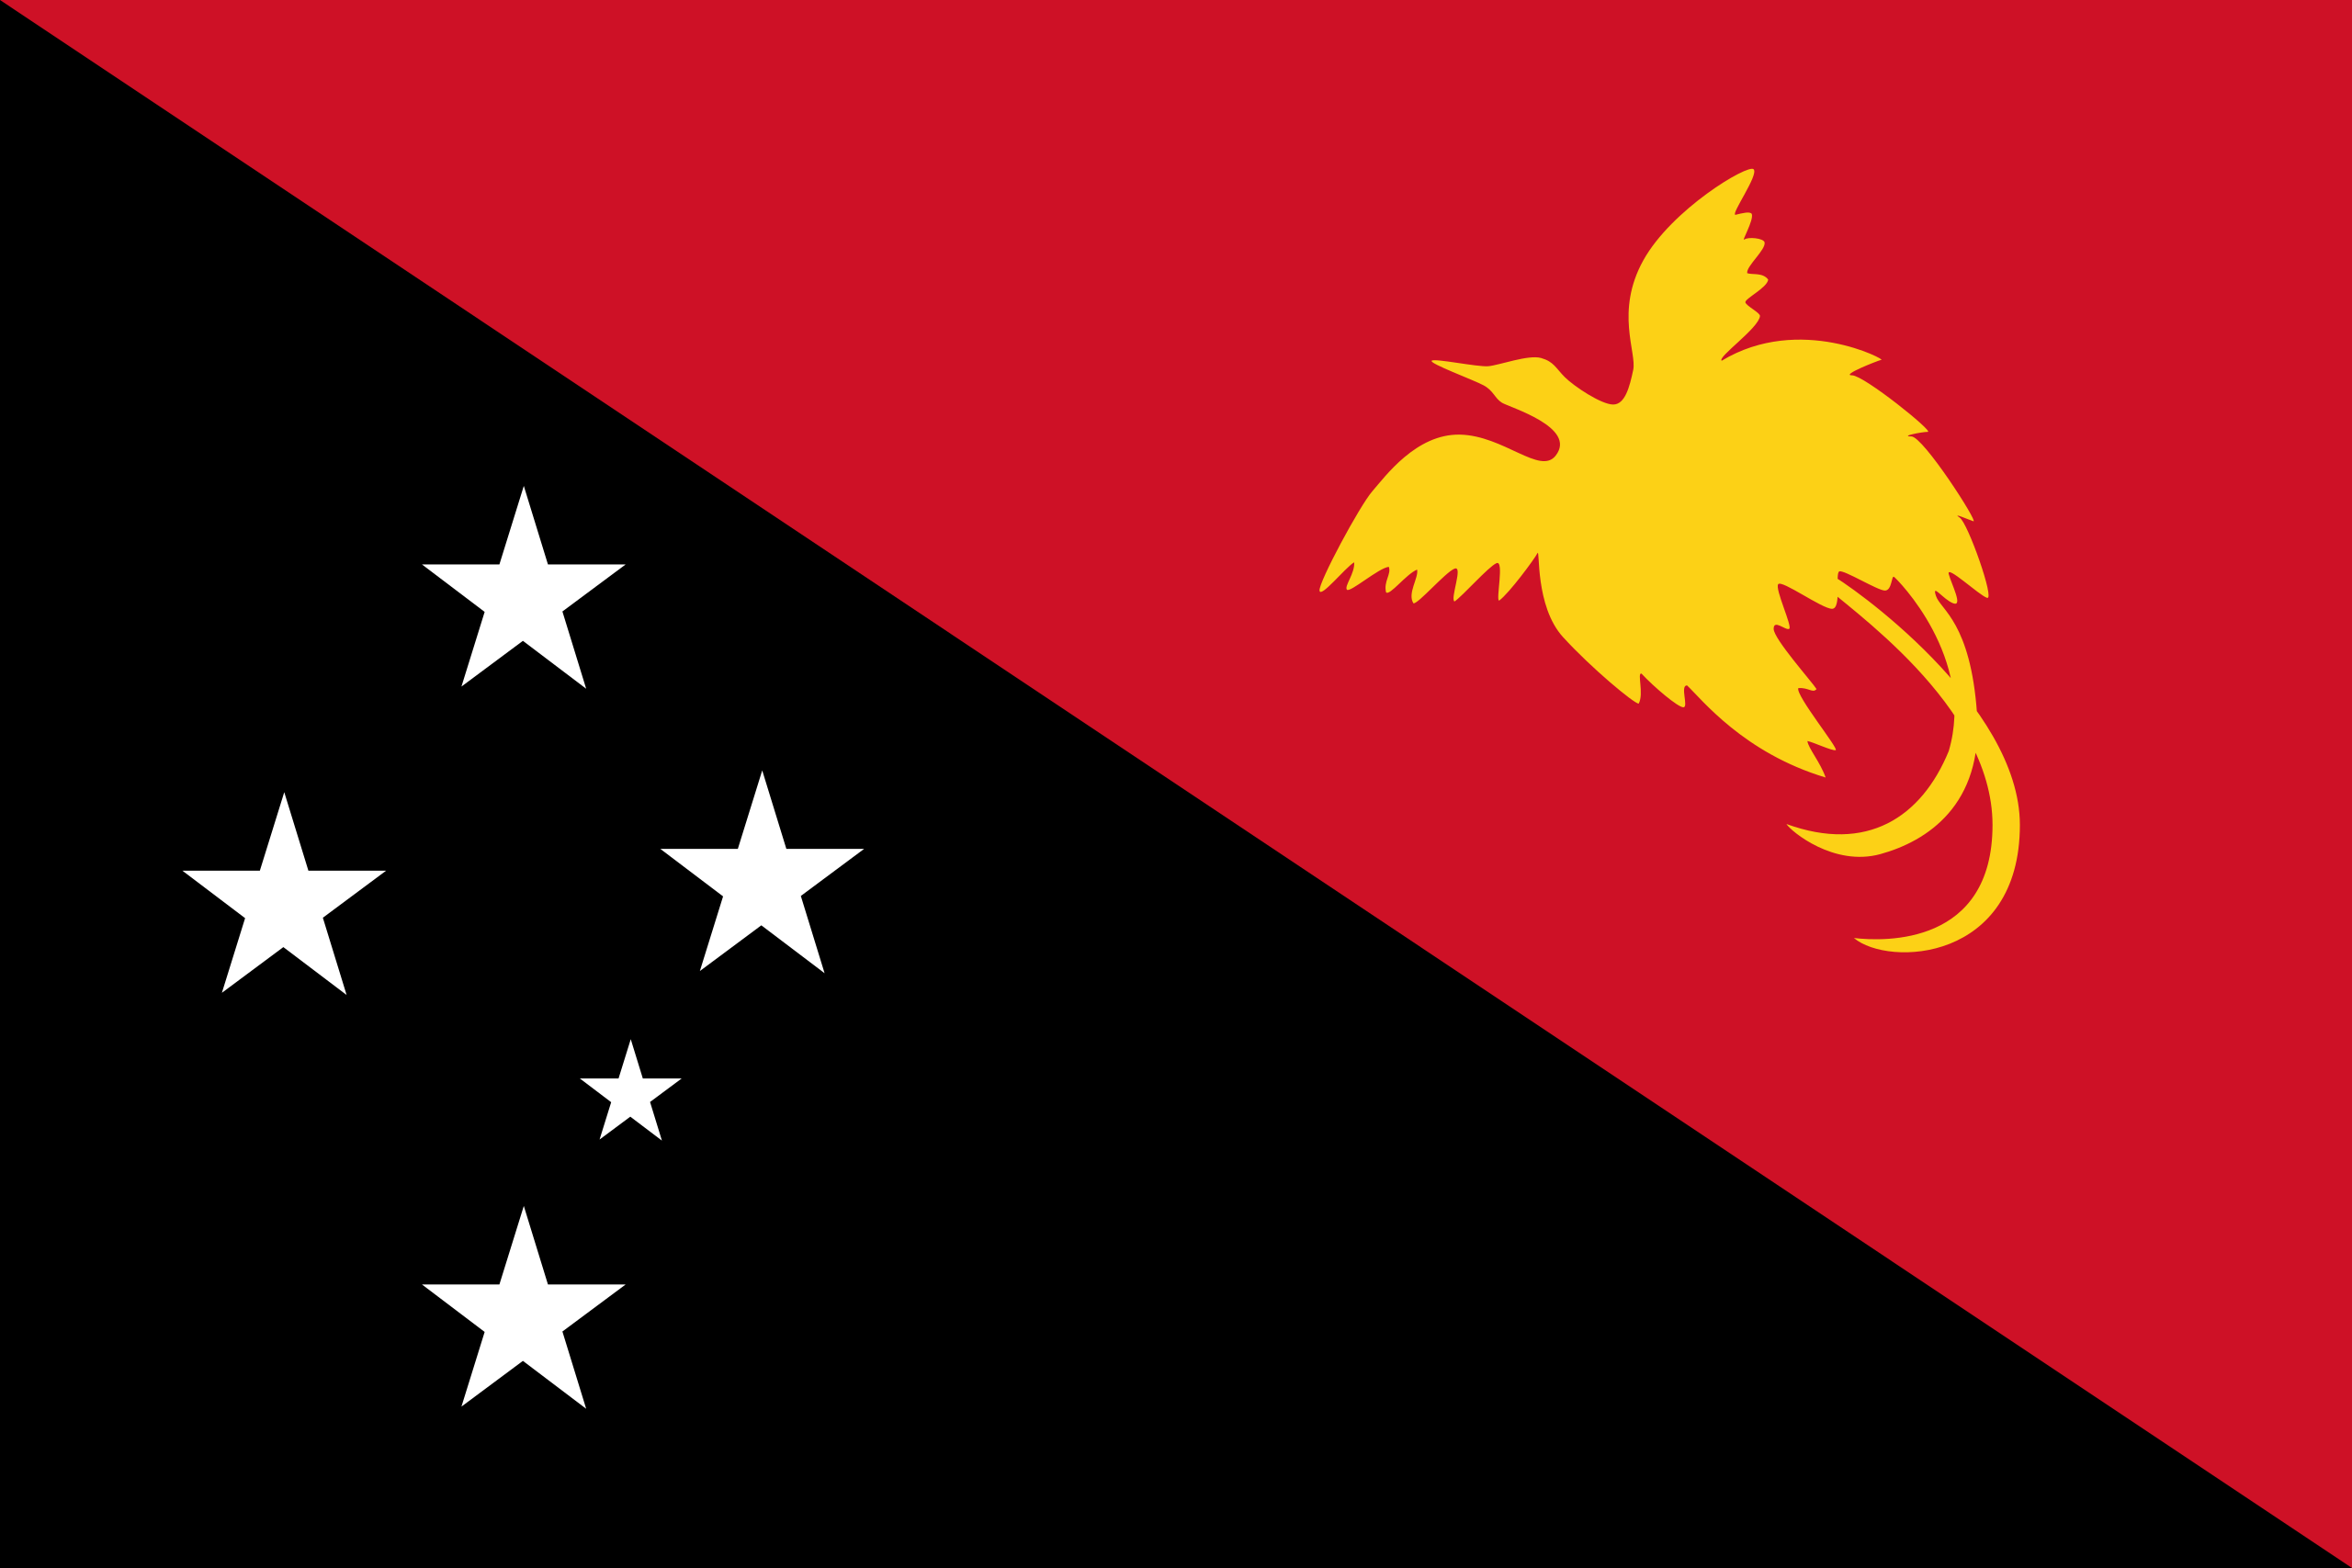 The Papua New Guinea Flag